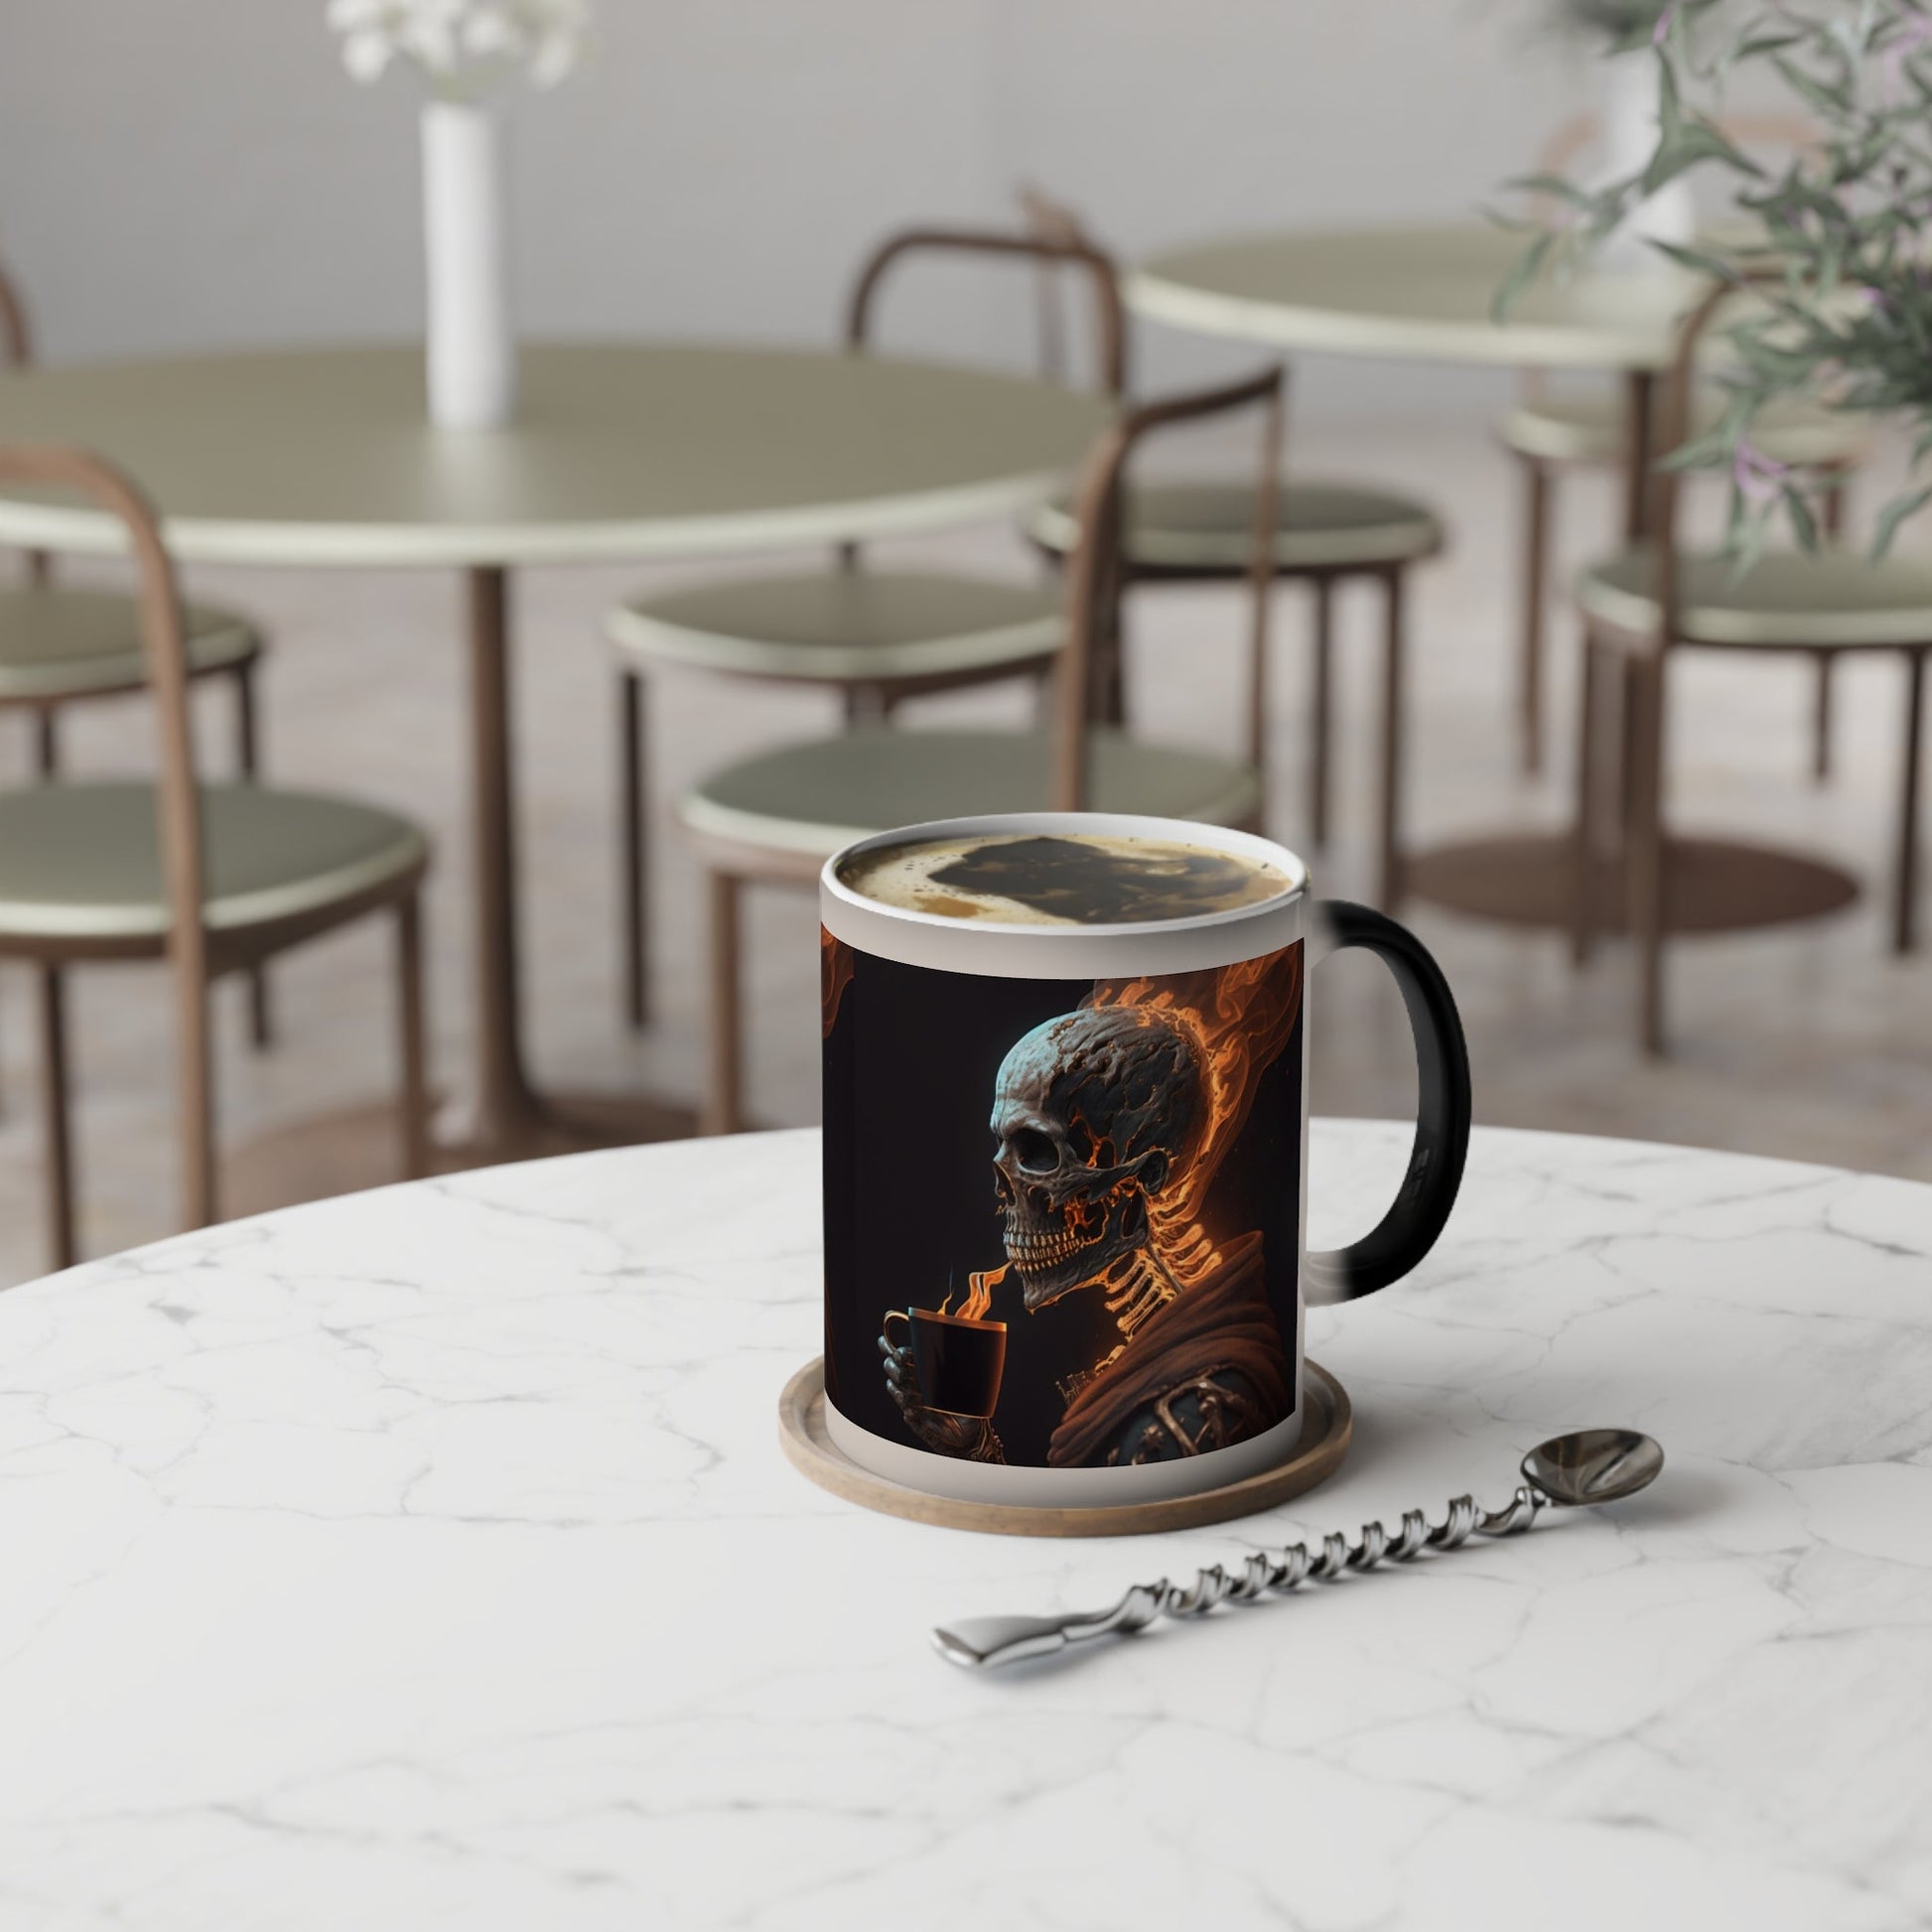 Mug - Smoking Hot Coffee Color-Changing Mug, 11oz